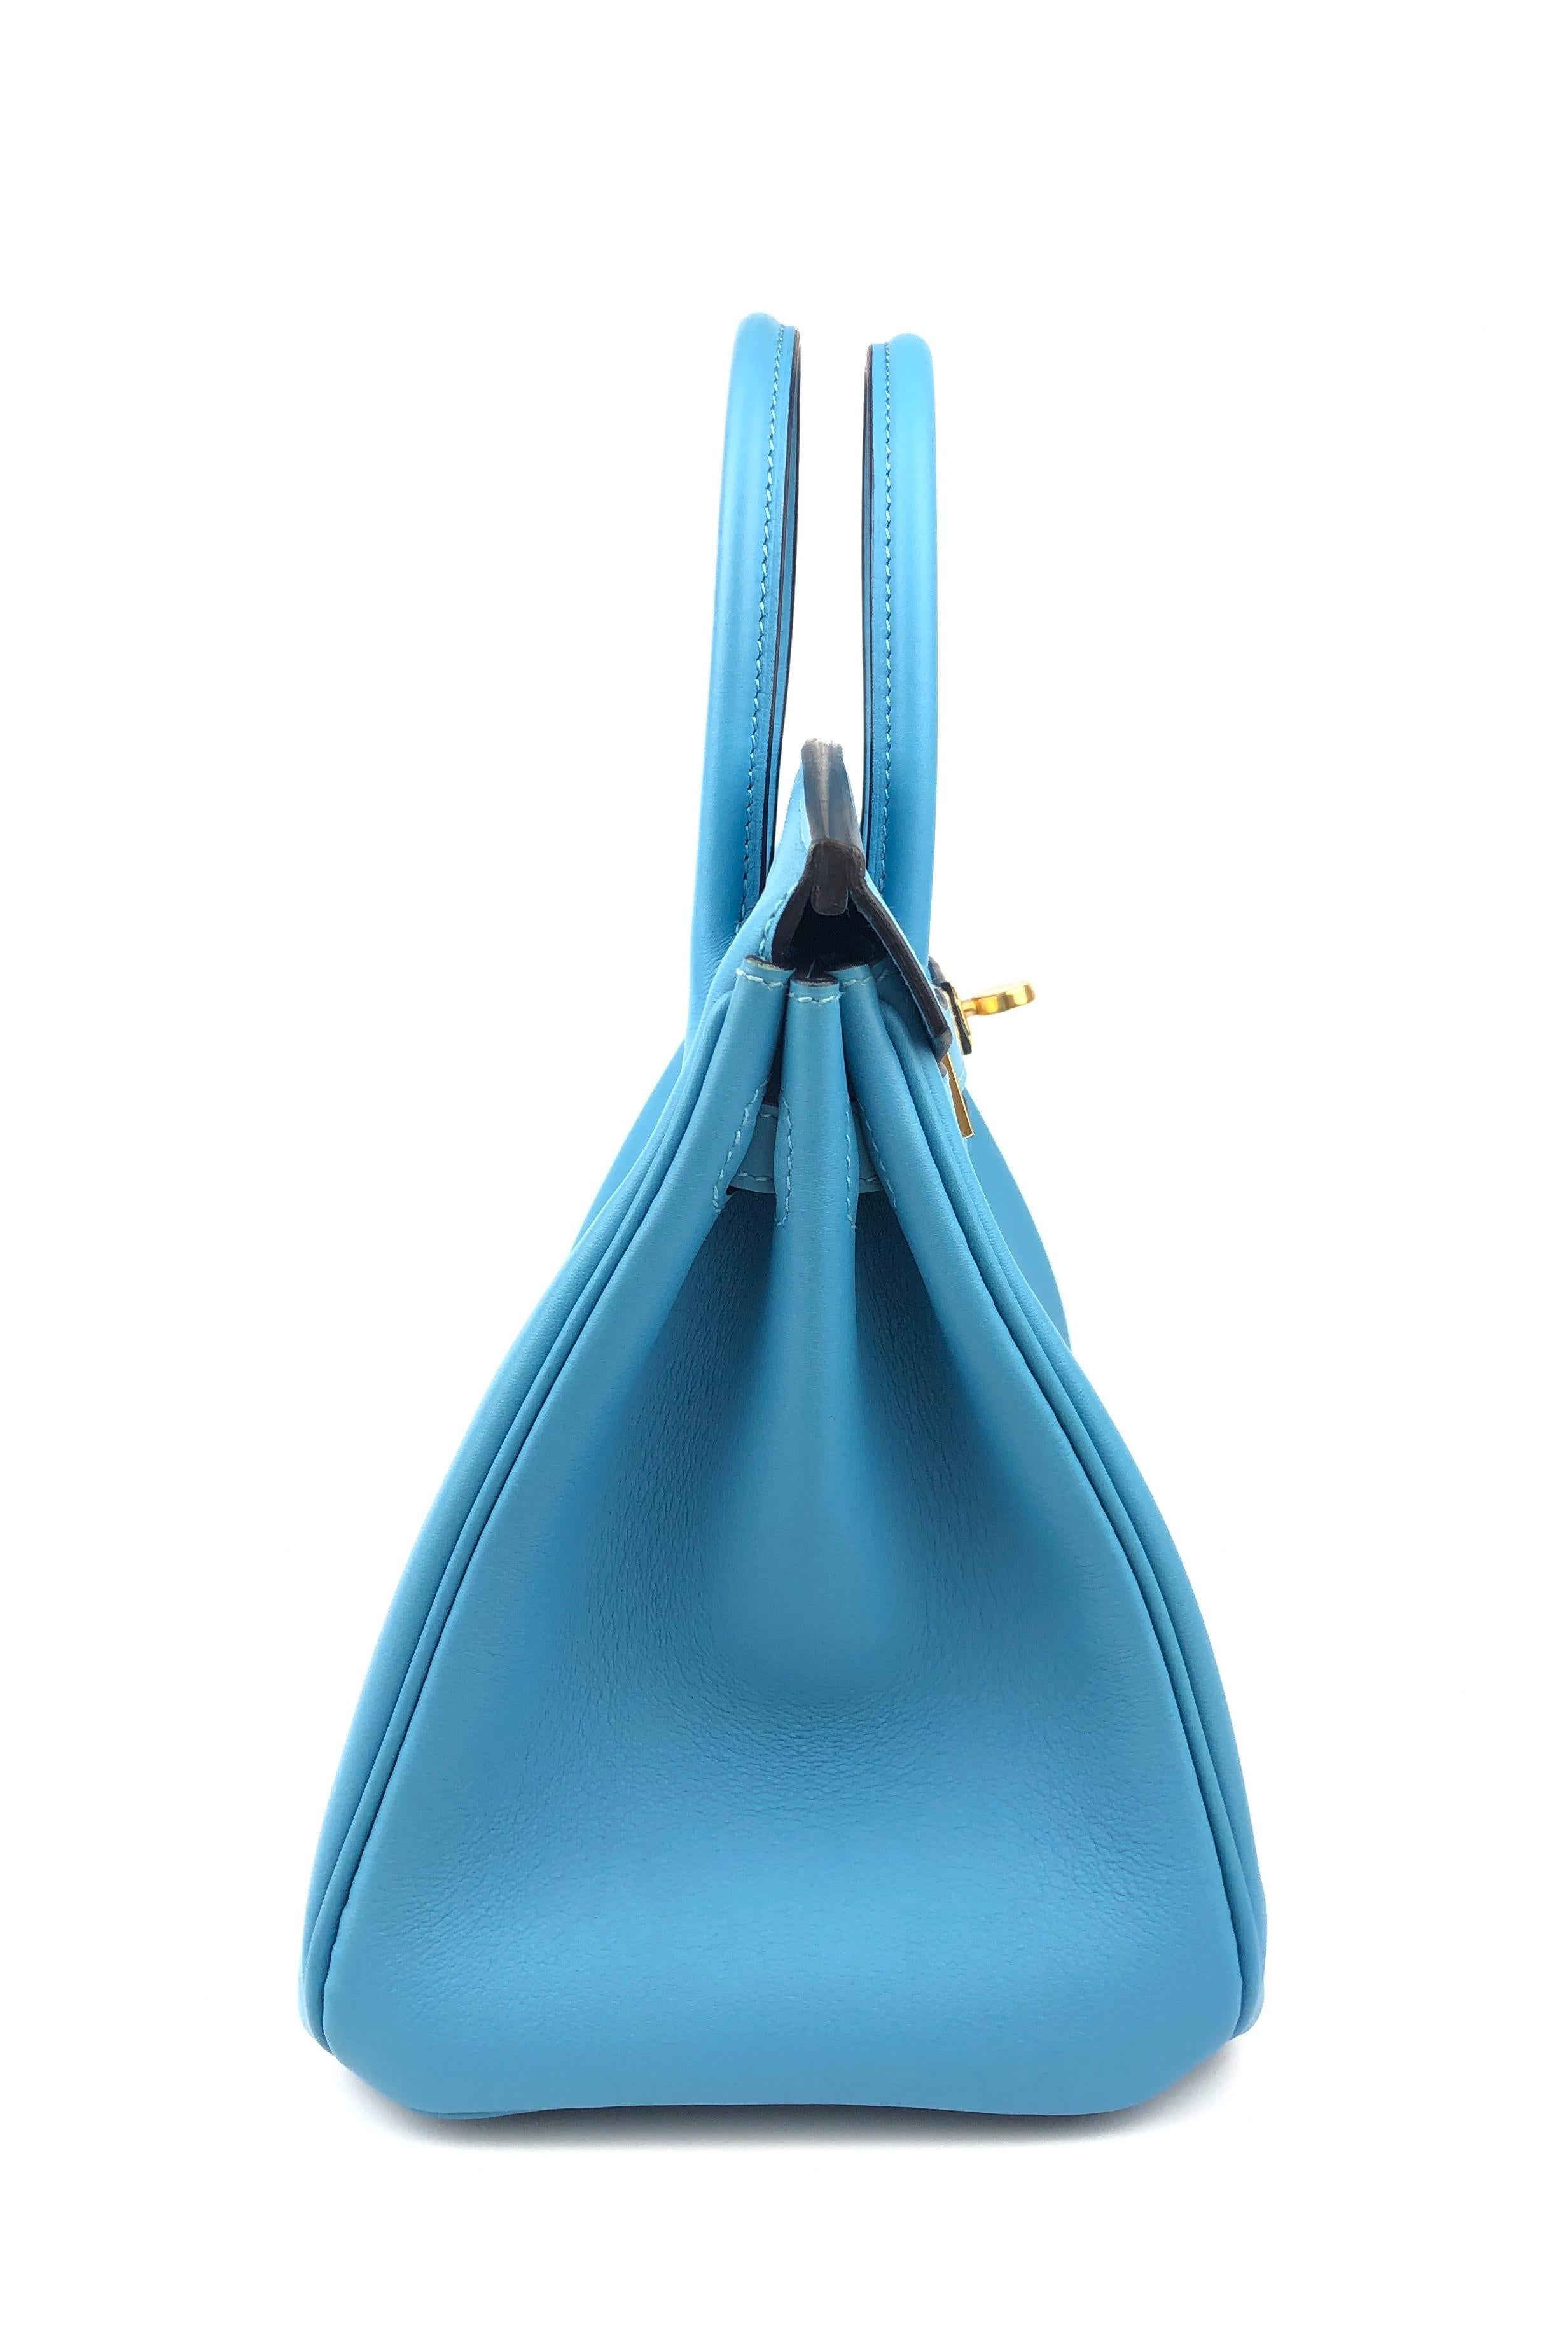 Hermes Birkin 25 Blue Bleu du Nord Leather Handbag Bag Gold Hardware ...